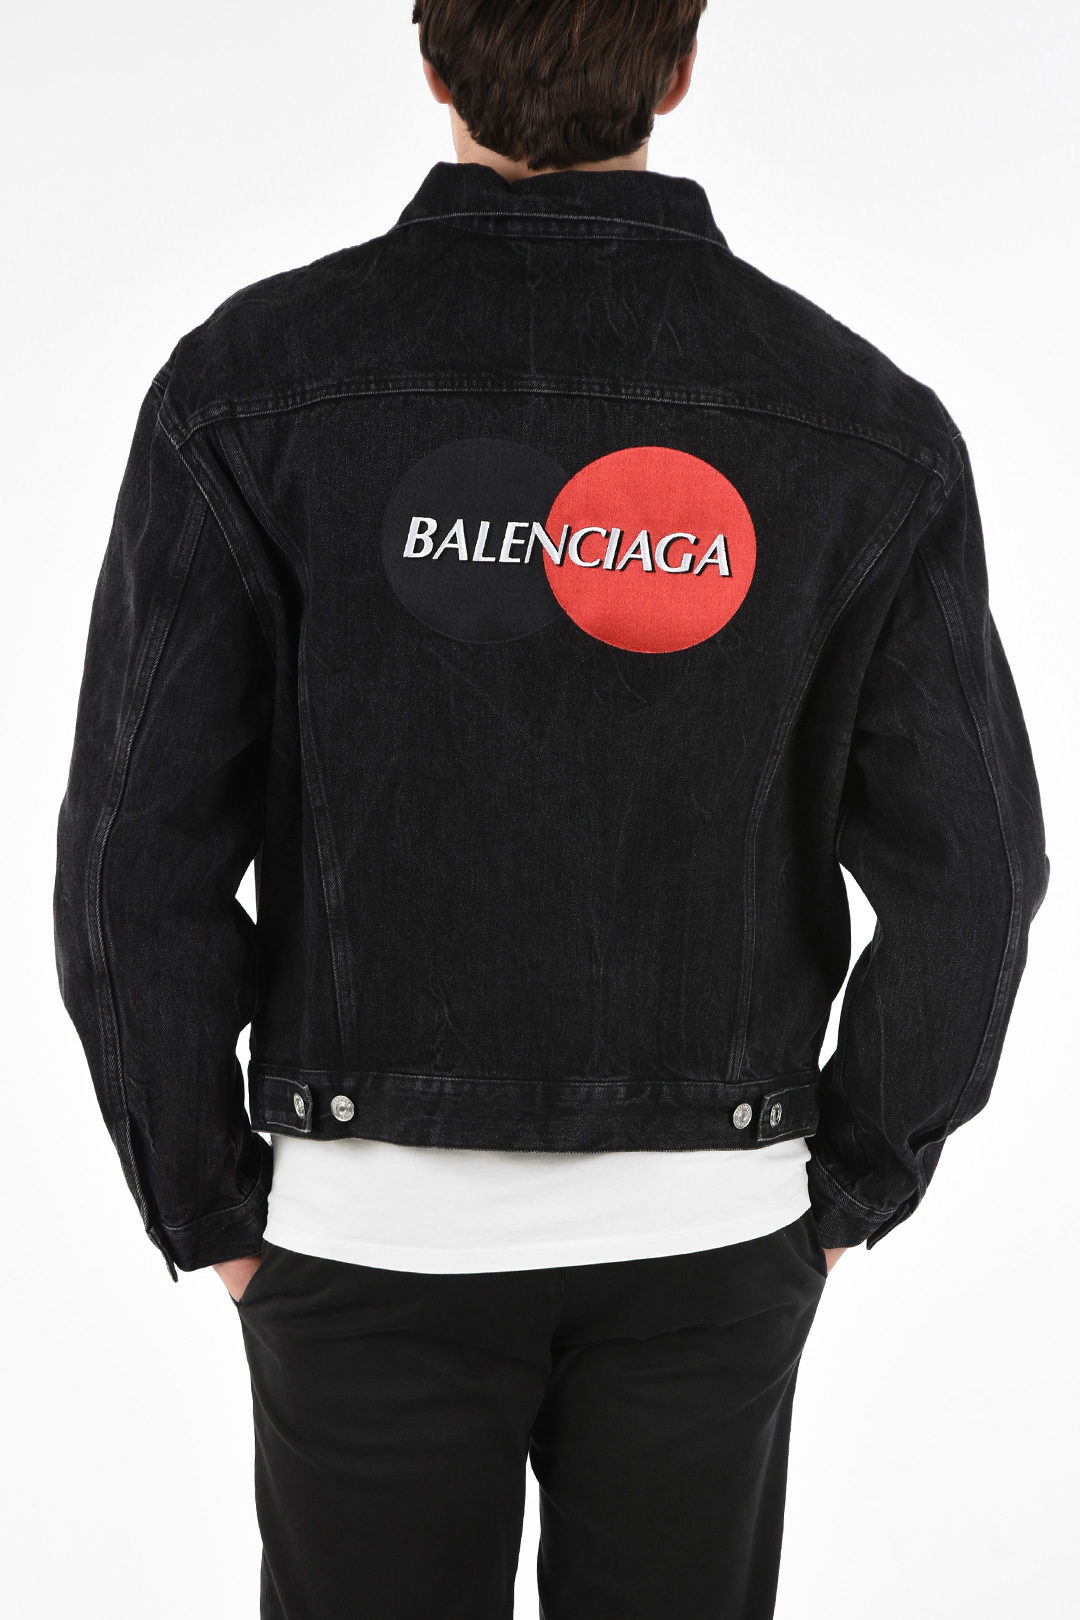 Balenciaga  Jackets  Coats  Black Balenciaga Jean Jacket  Poshmark